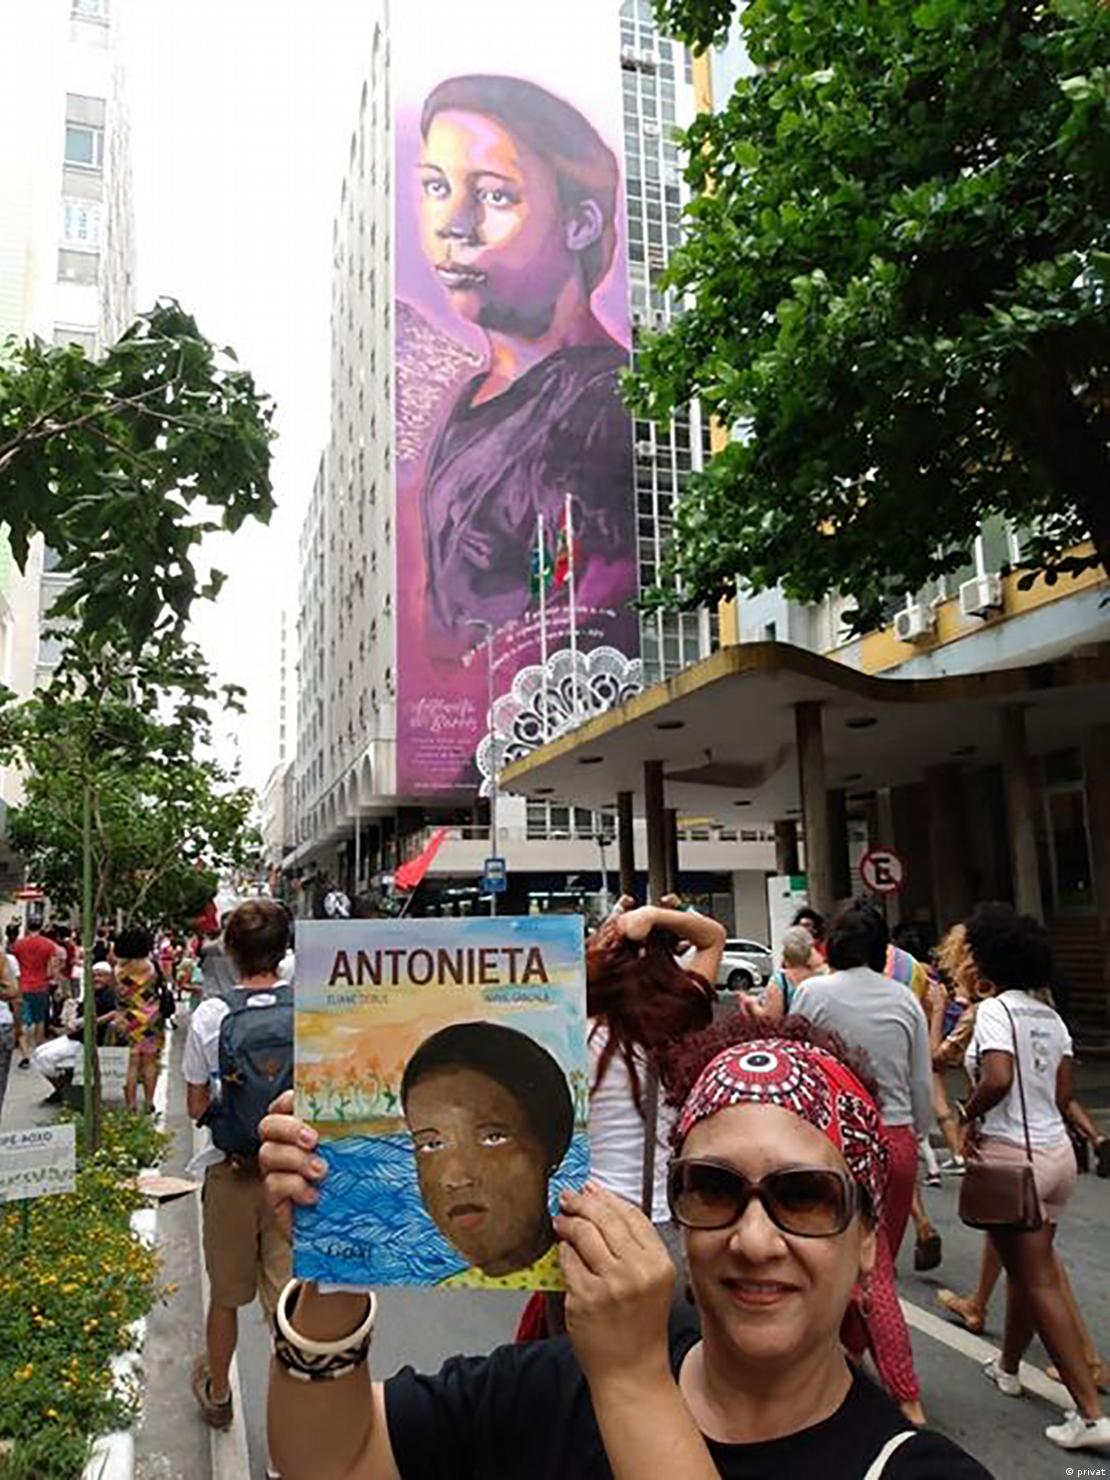 A professora Eliane Debus em frente ao mural em homenagem a Antonieta, em Florianópolis, segurando seu livro infantil sobre a educadora